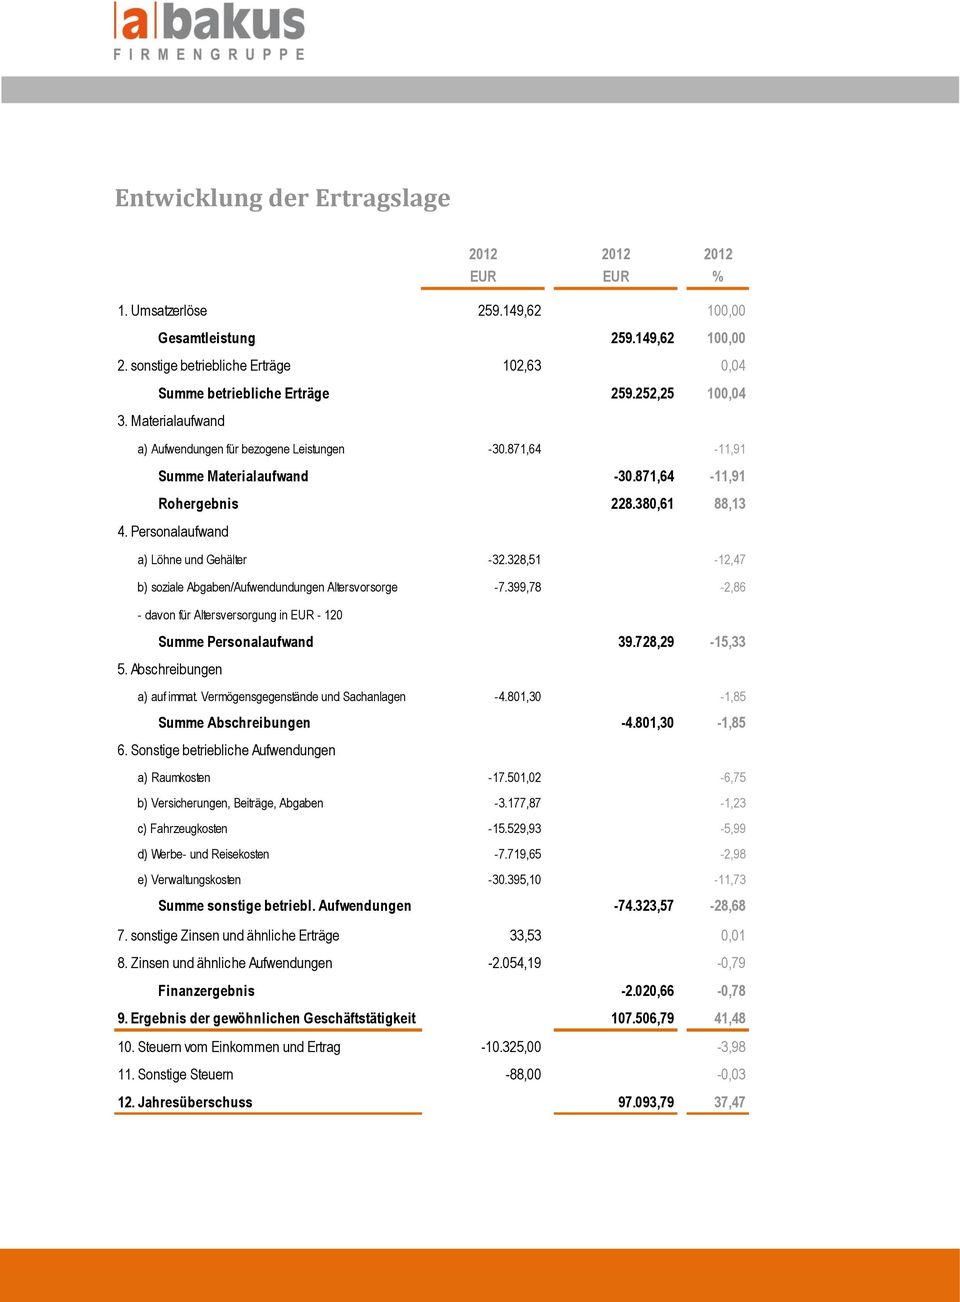 Personalaufwand a) Löhne und Gehälter -32.328,51-12,47 b) soziale Abgaben/Aufwendundungen Altersvorsorge - davon für Altersversorgung in EUR - 120-7.399,78-2,86 Summe Personalaufwand 39.